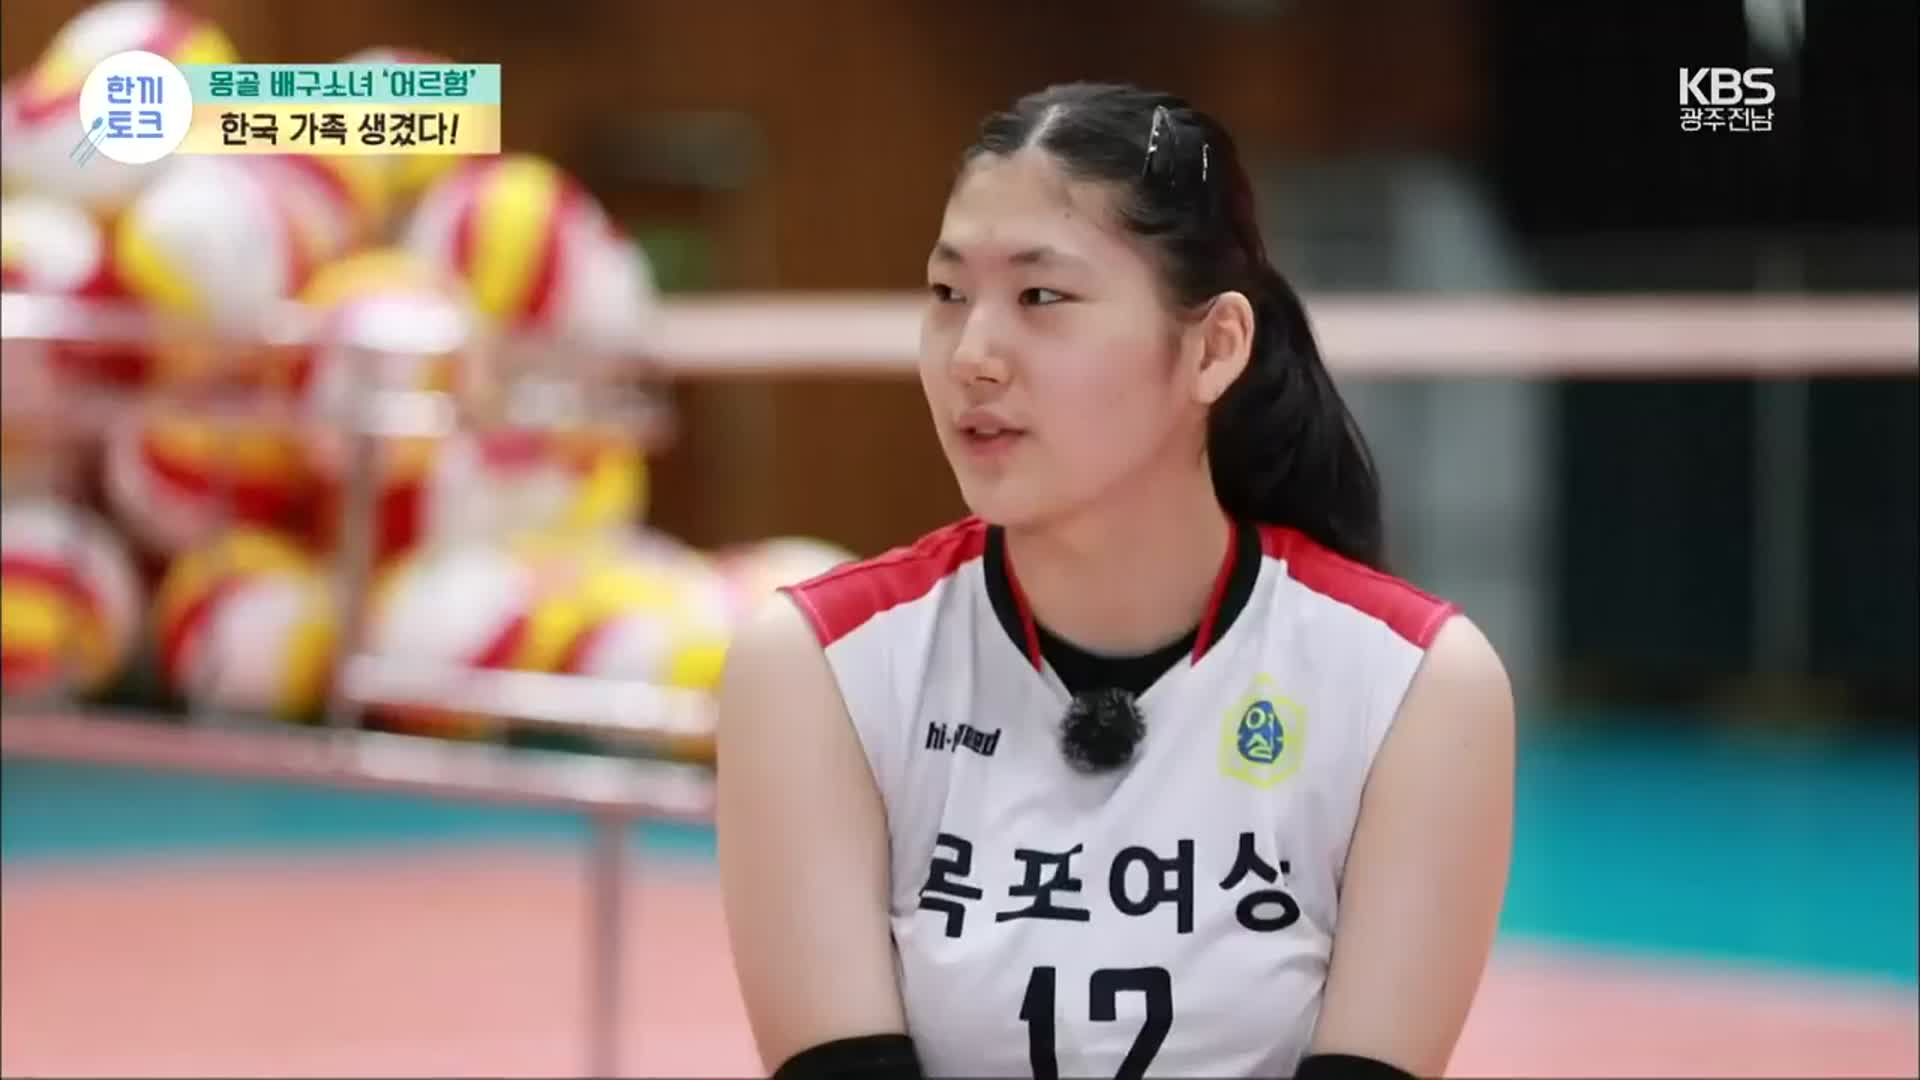 [한끼토크] 몽골 배구소녀 ‘어르헝’, 한국 가족 생겼다!